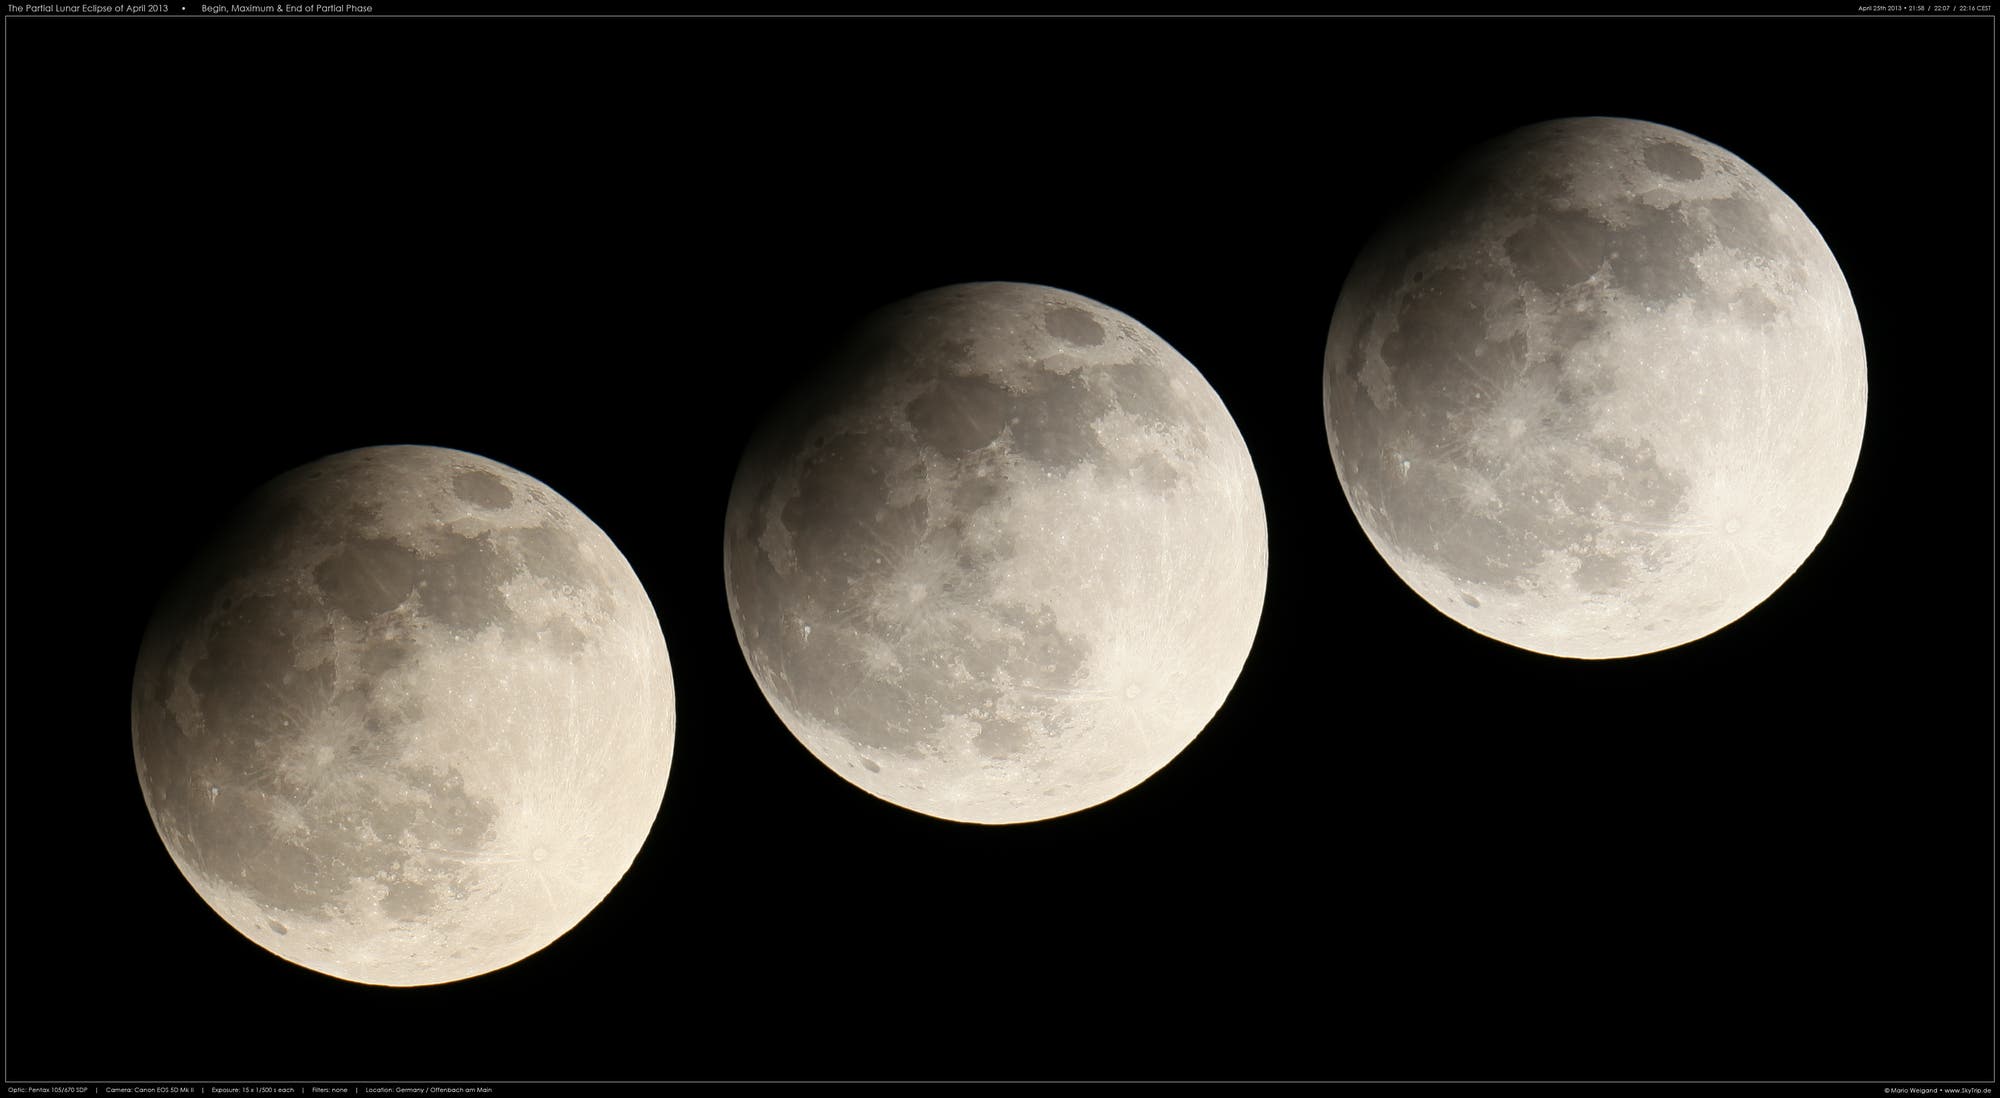 Die partielle Mondfinsternis vom 25. April 2013